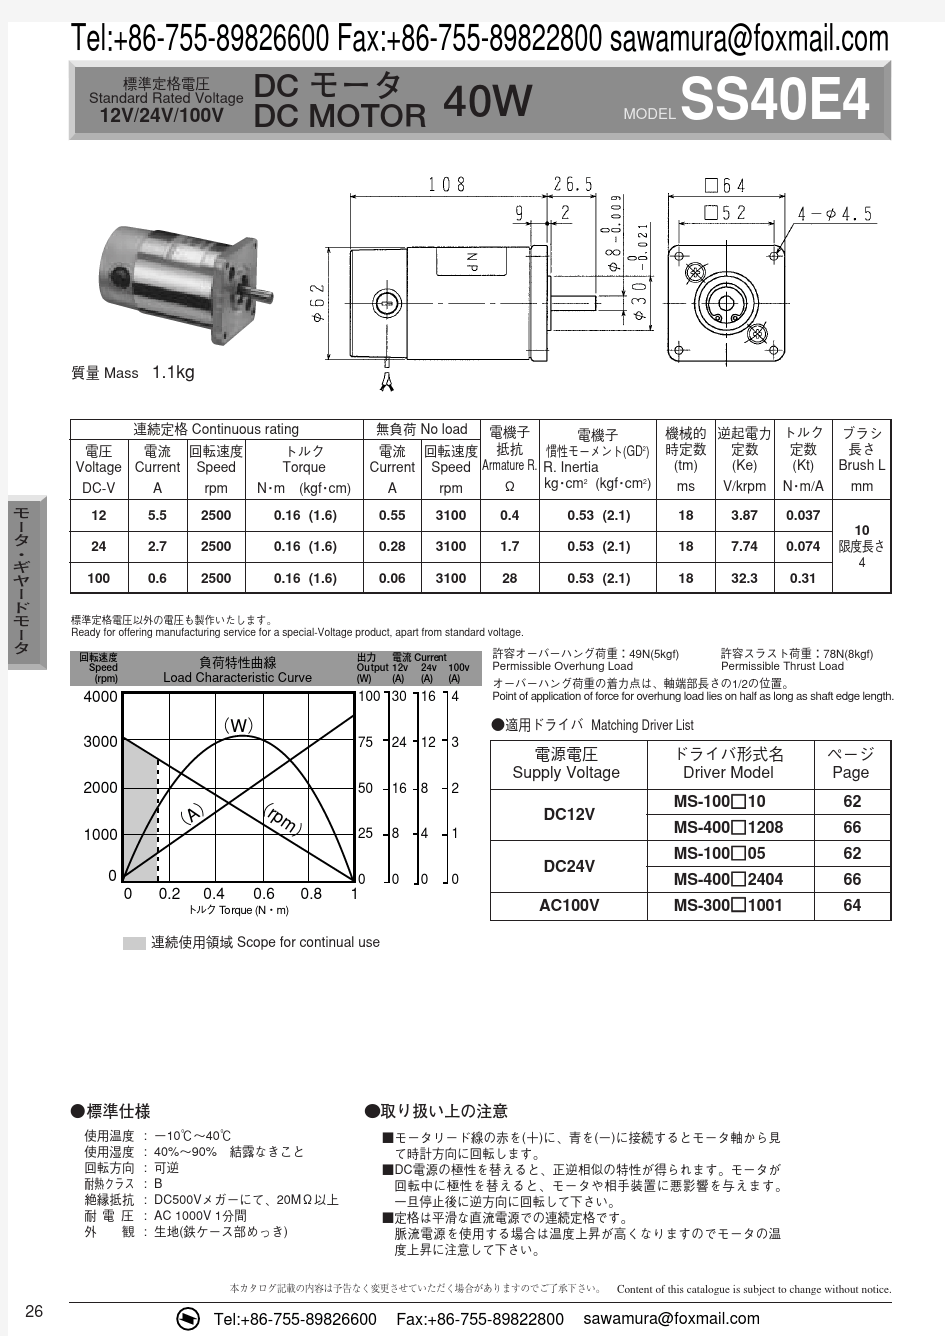 日本SAWAMURA DENKI(泽村)小型直流减速马达(电机)SS40E4采购联络及产品性能参数明细